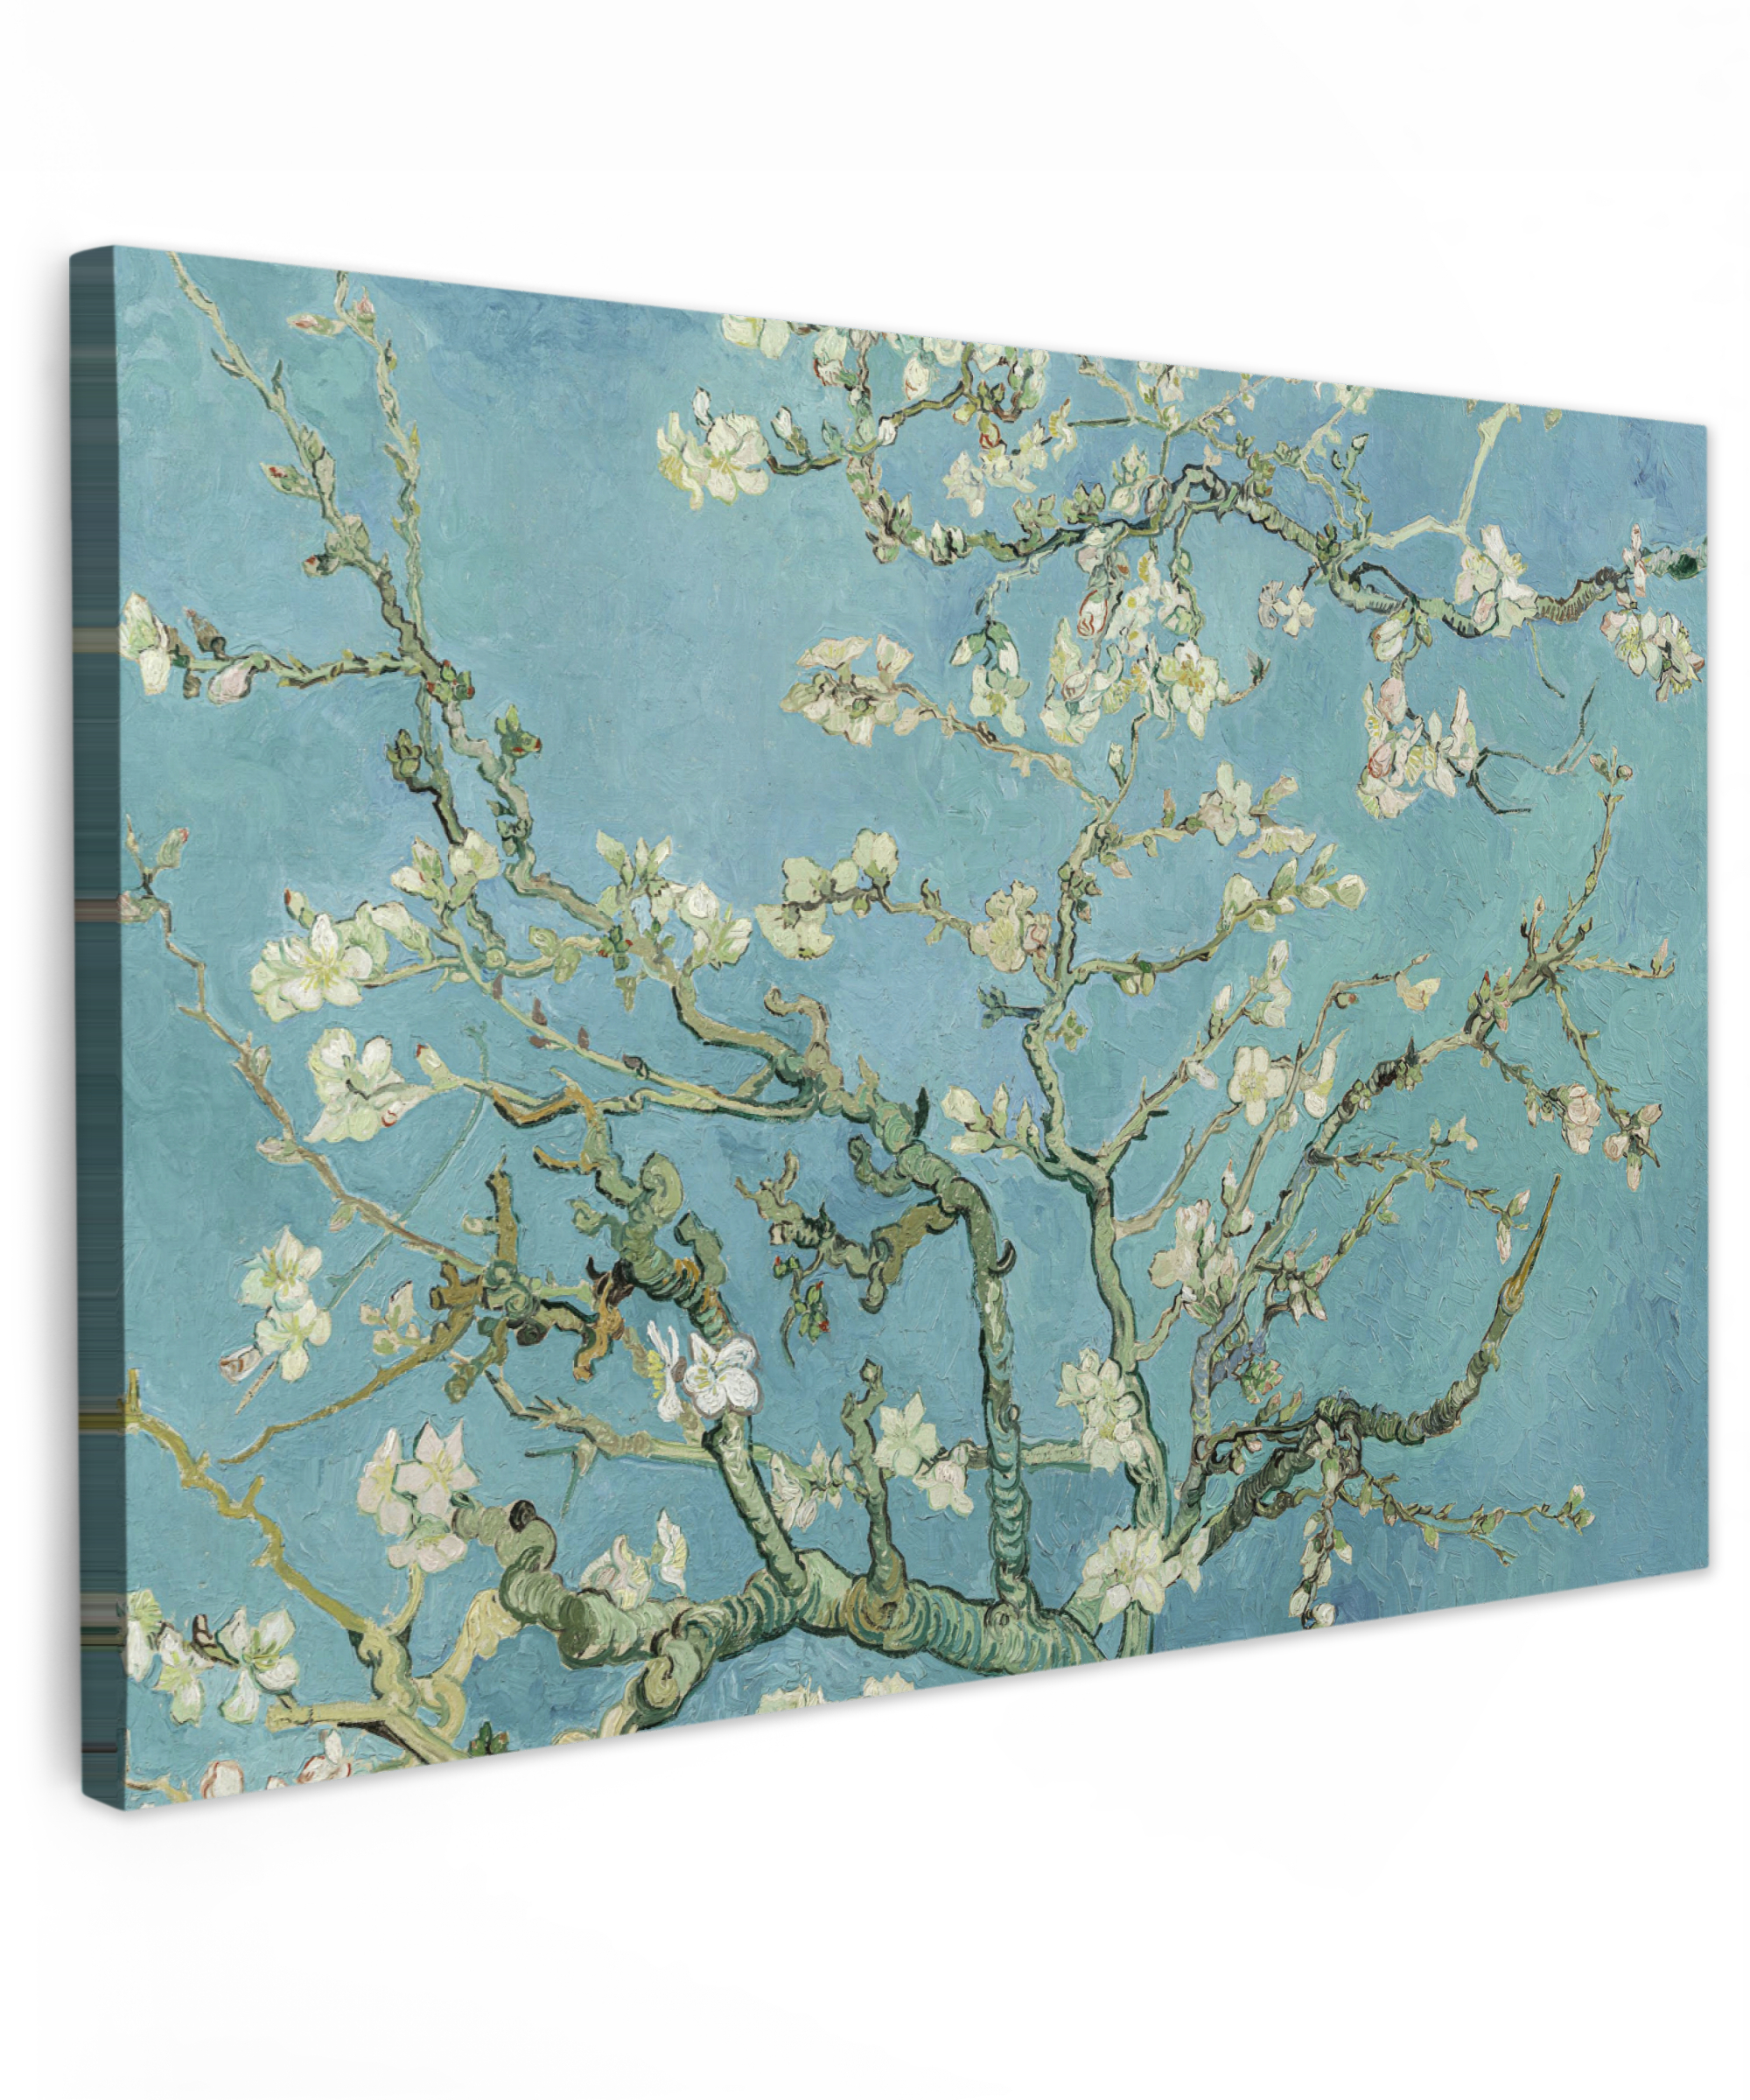 Leinwandbild - Van Gogh - Mandelblüte - Alte Meister - Kunst - Vintage